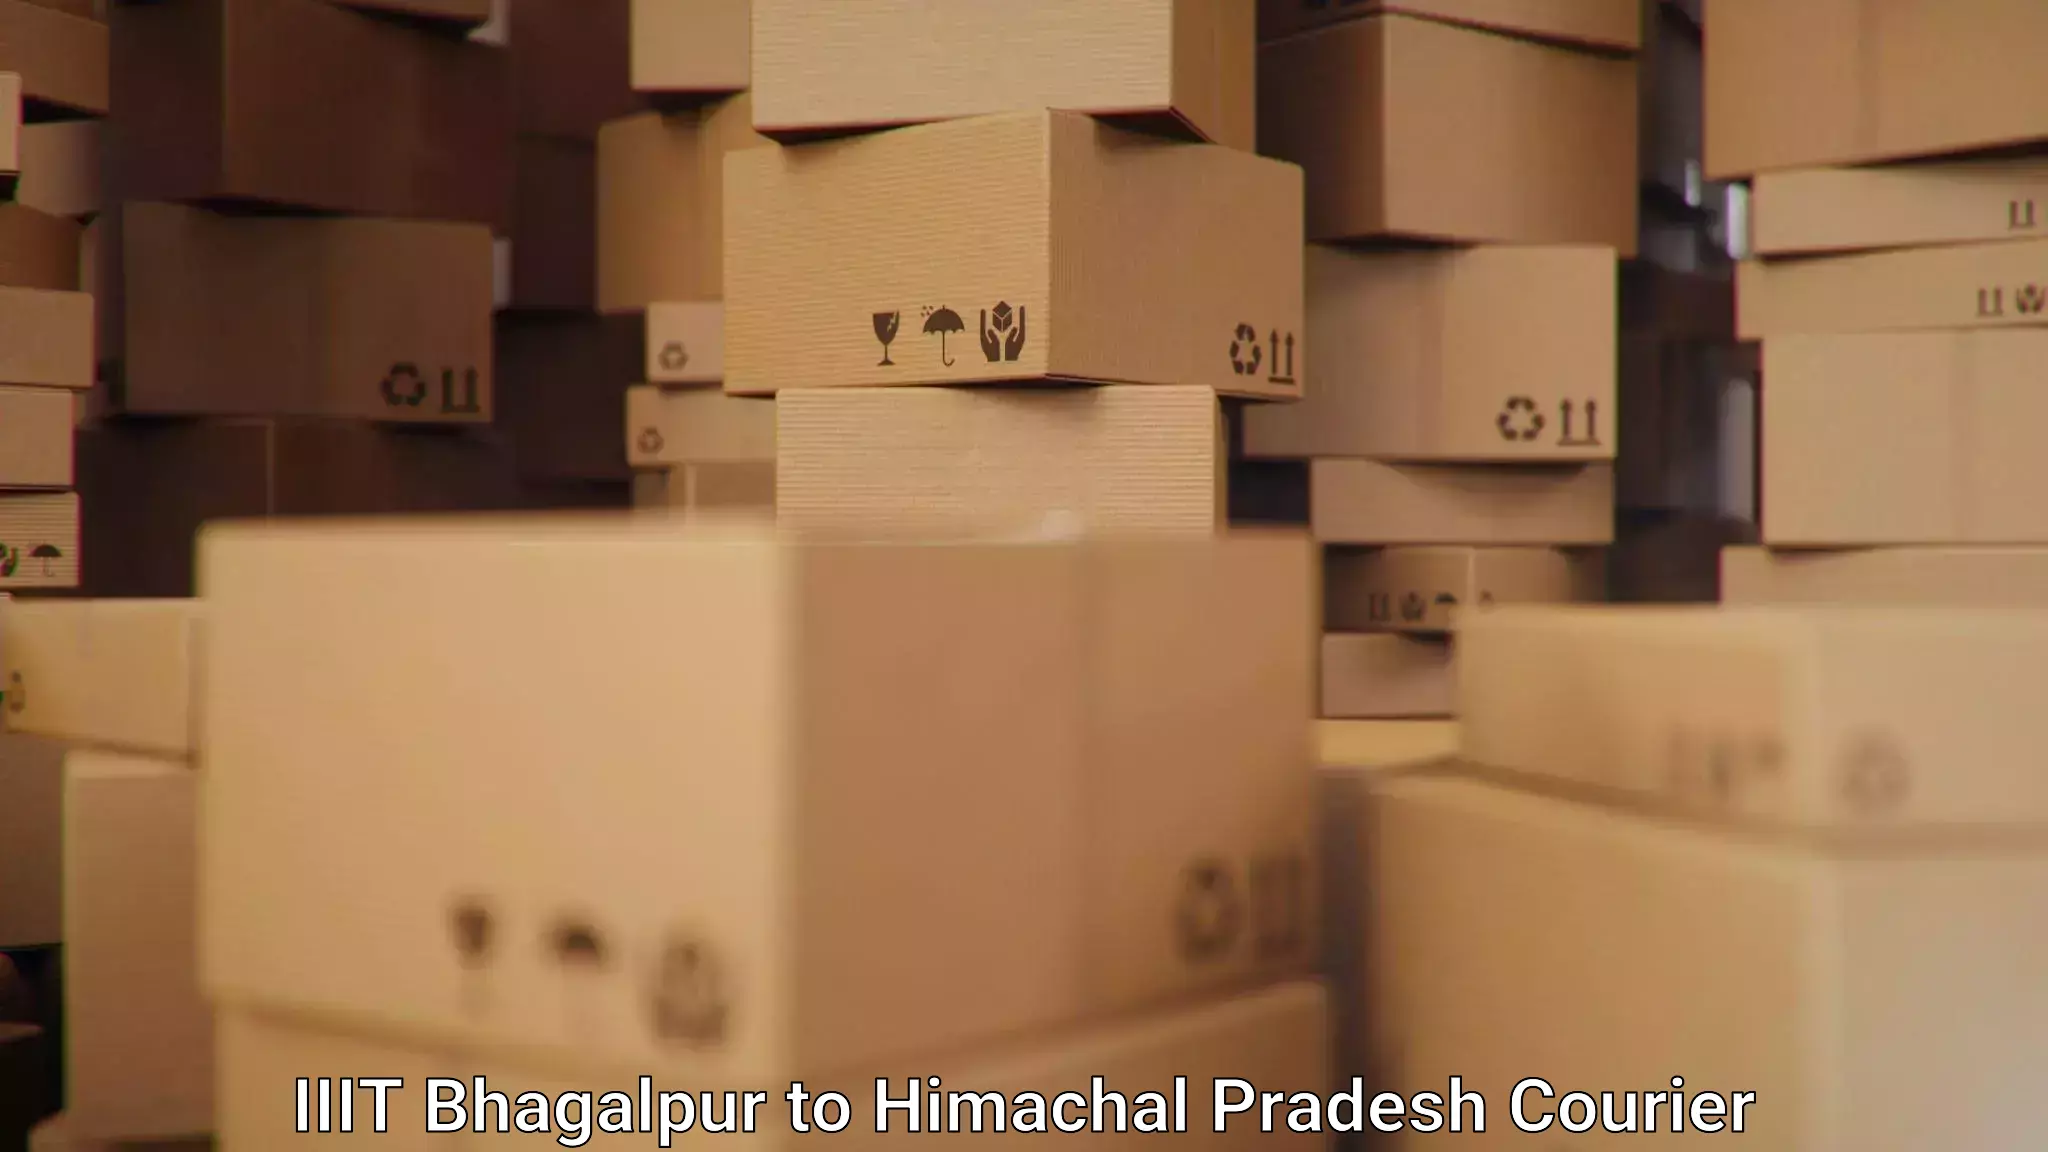 Courier service booking in IIIT Bhagalpur to Himachal Pradesh